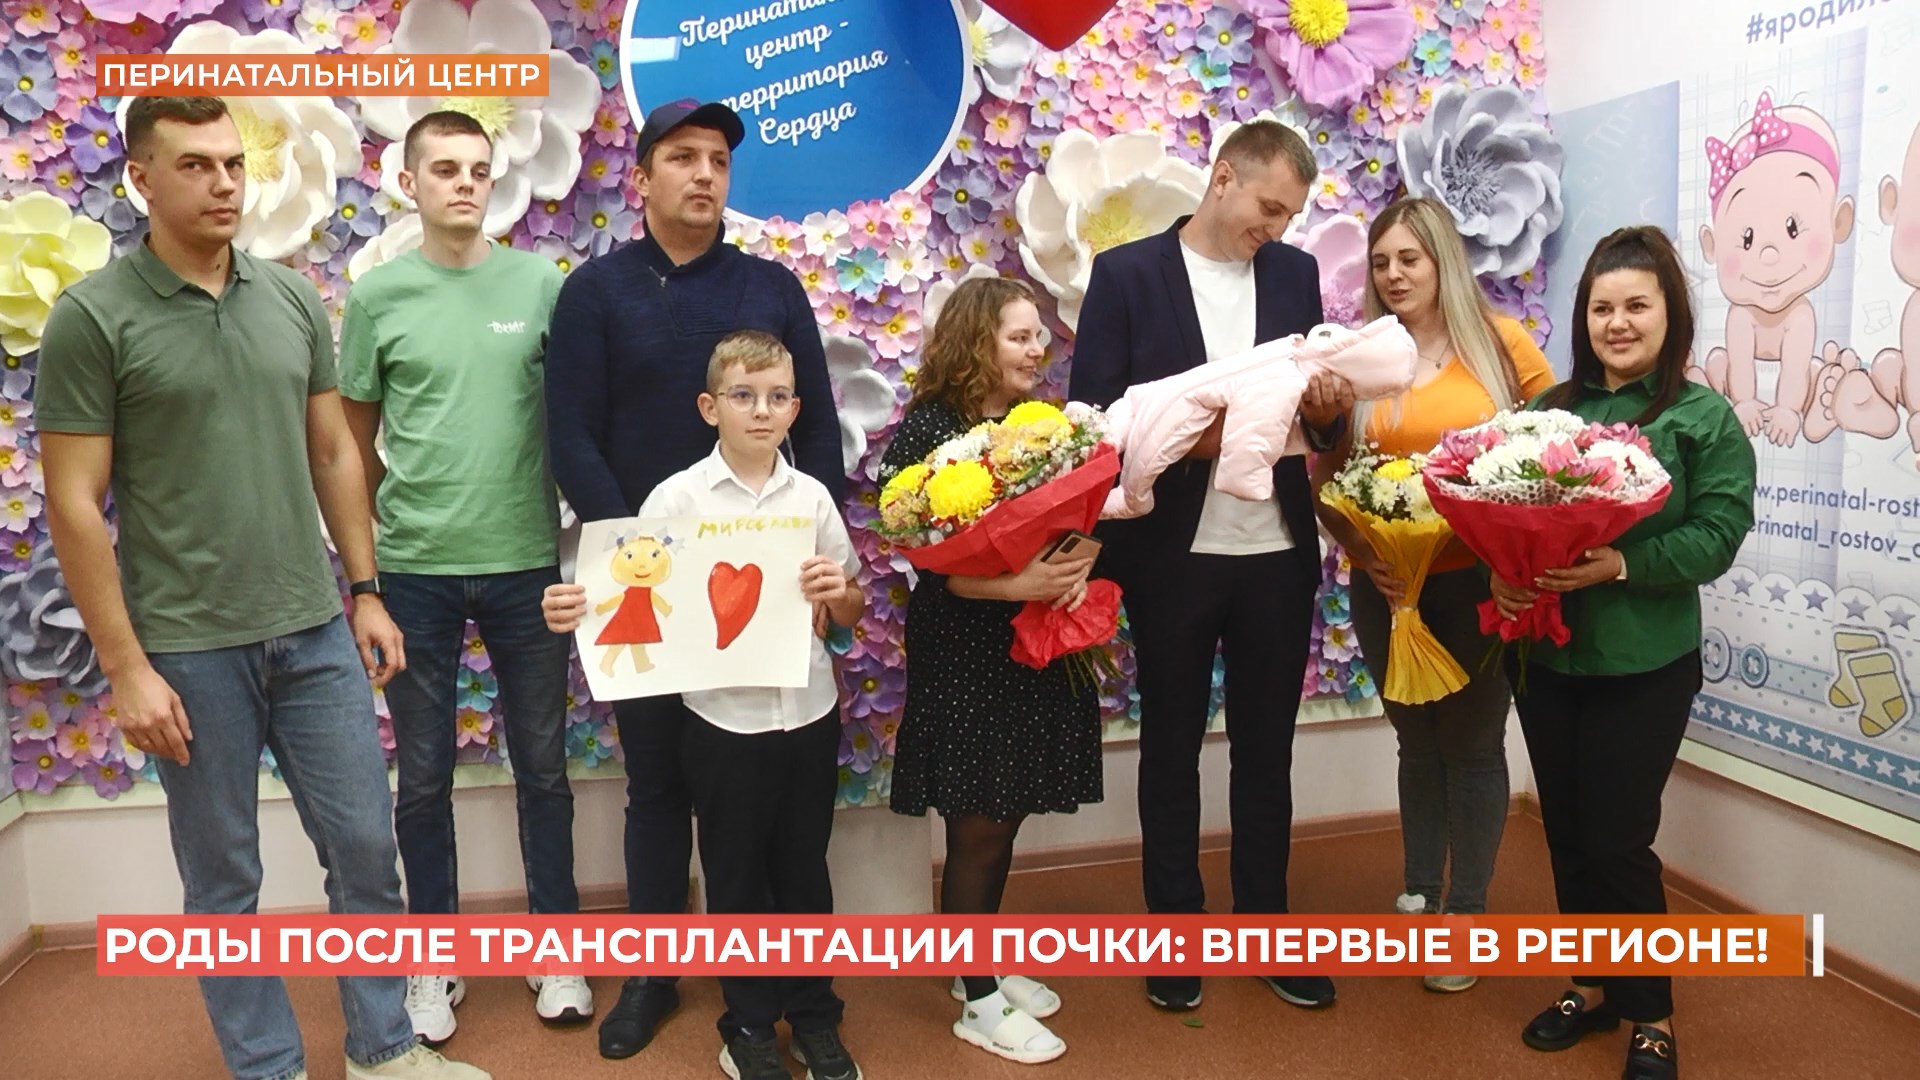 Уникальные роды после трансплантации почки  впервые провели в Ростове